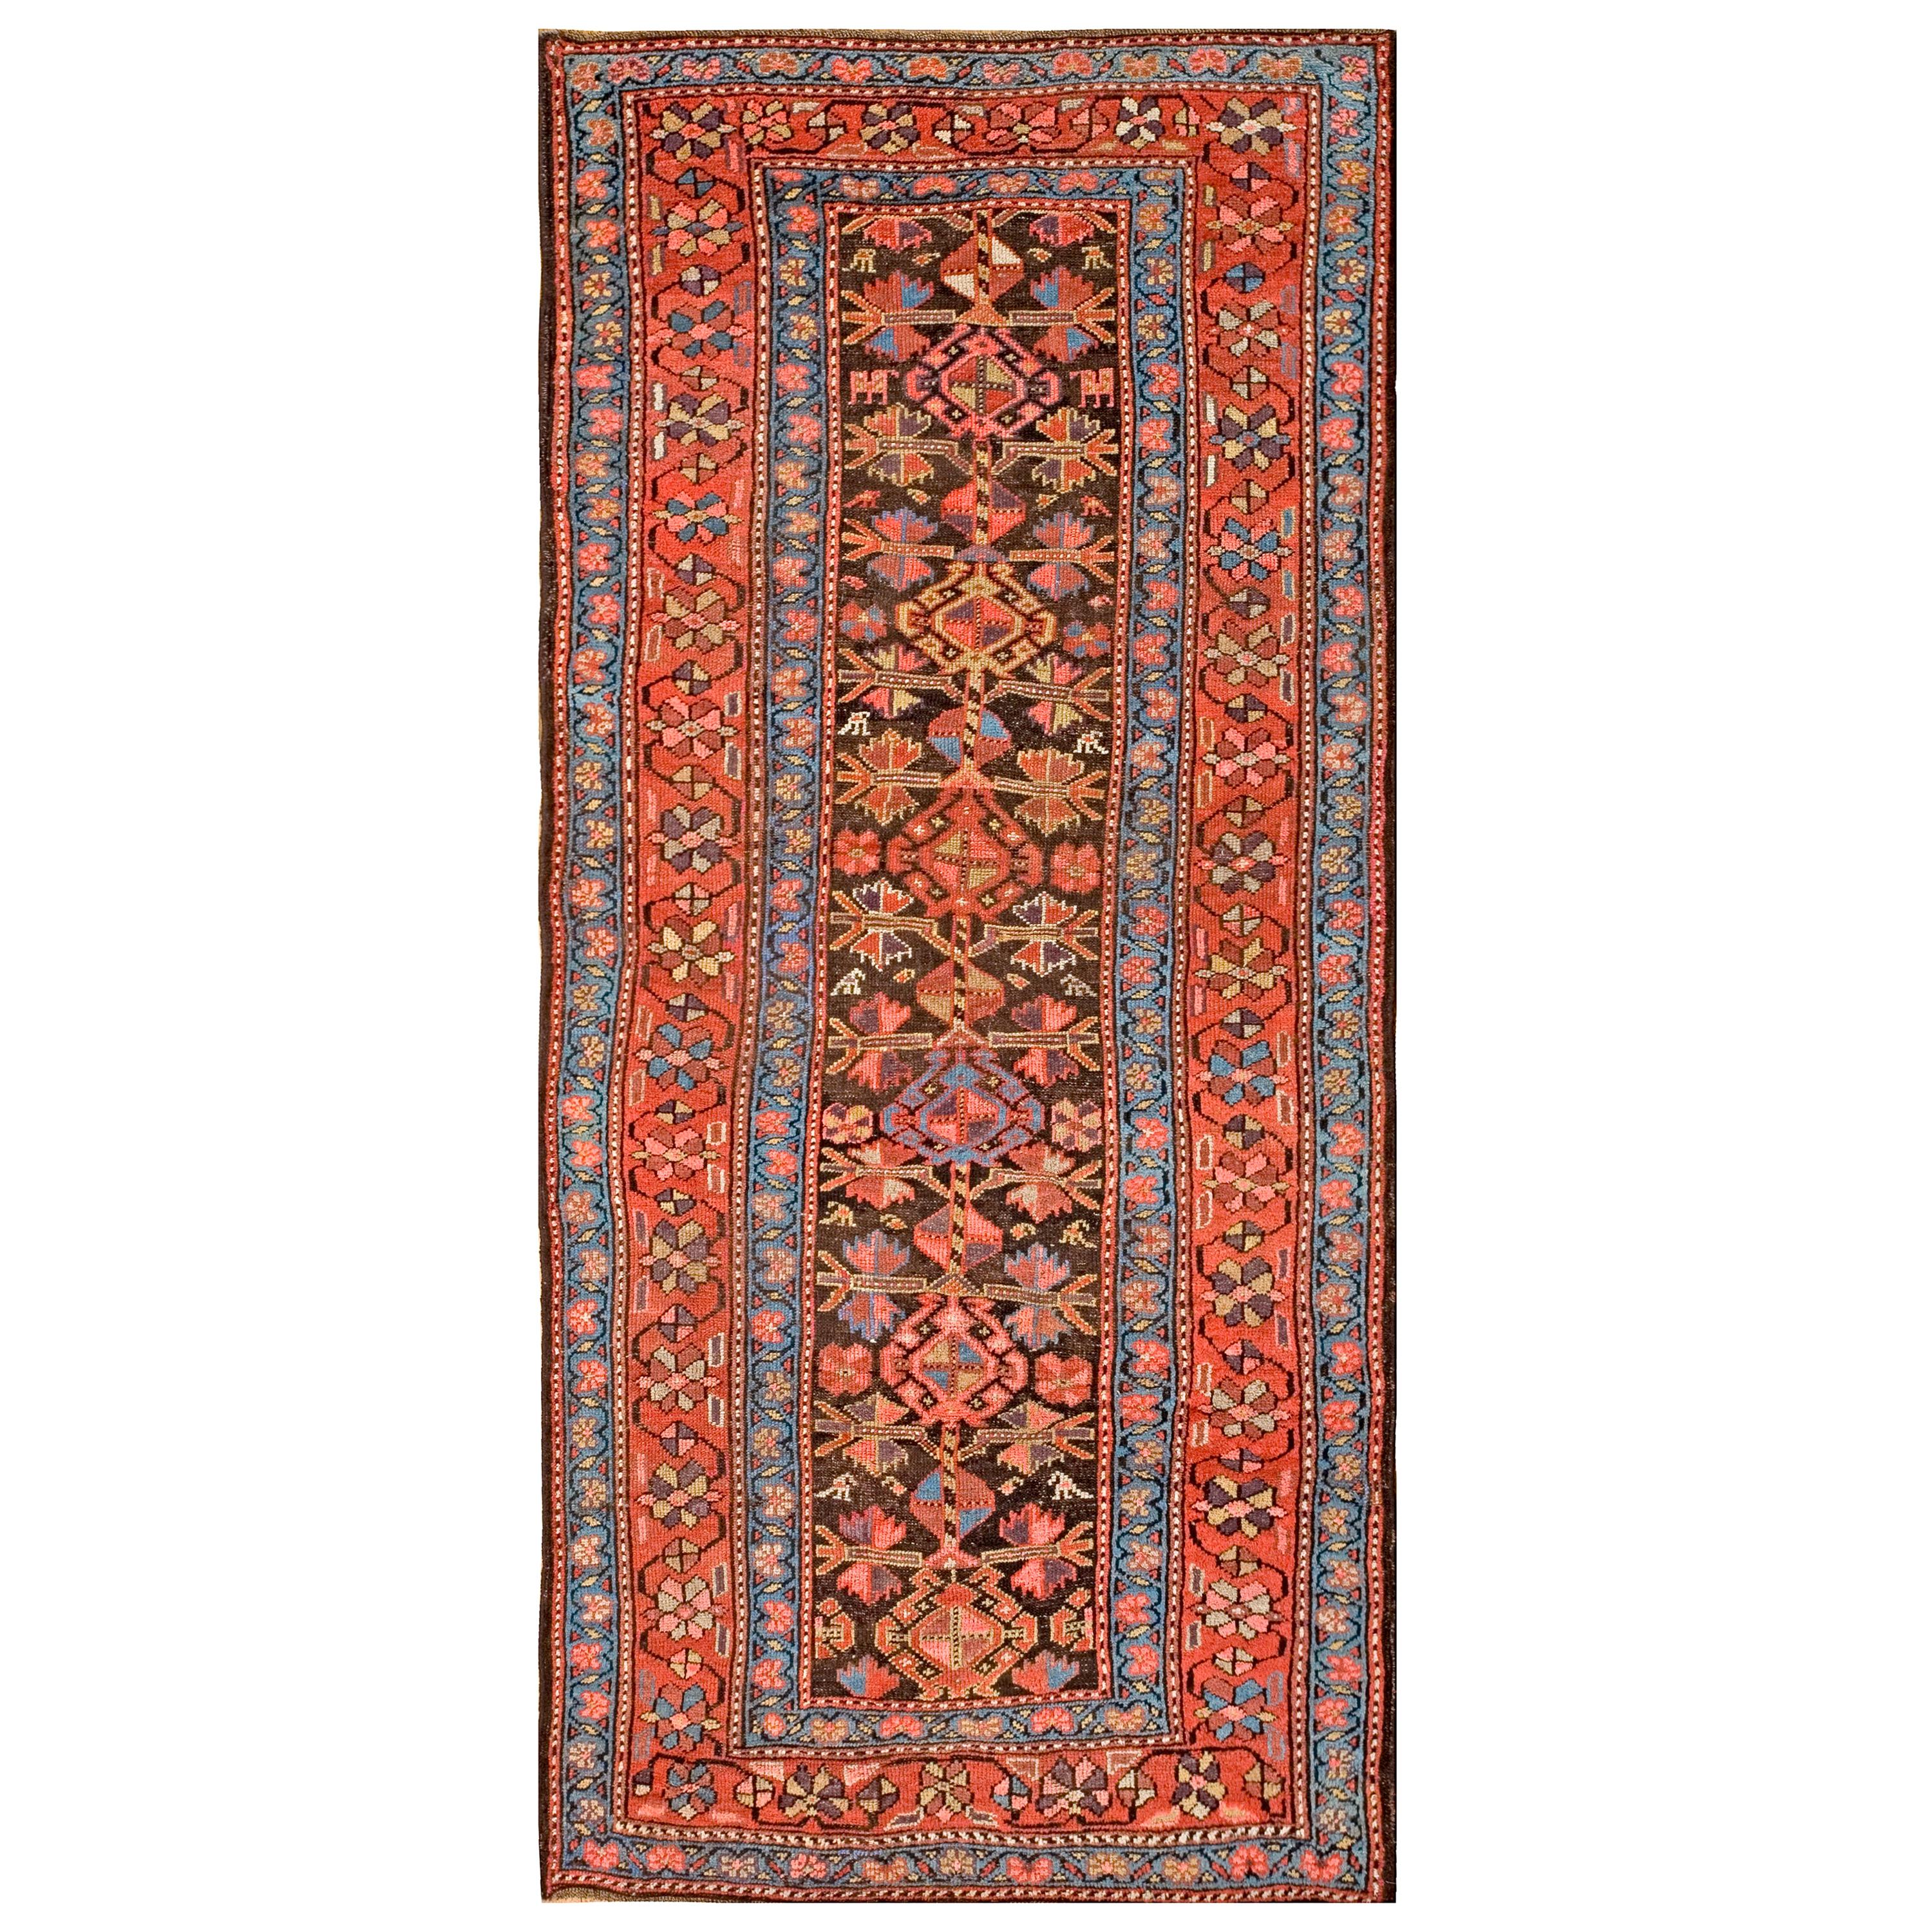 Persischer Kurdischer Teppich aus dem späten 19. Jahrhundert ( 4' x 8'9" - 122 x  267 )